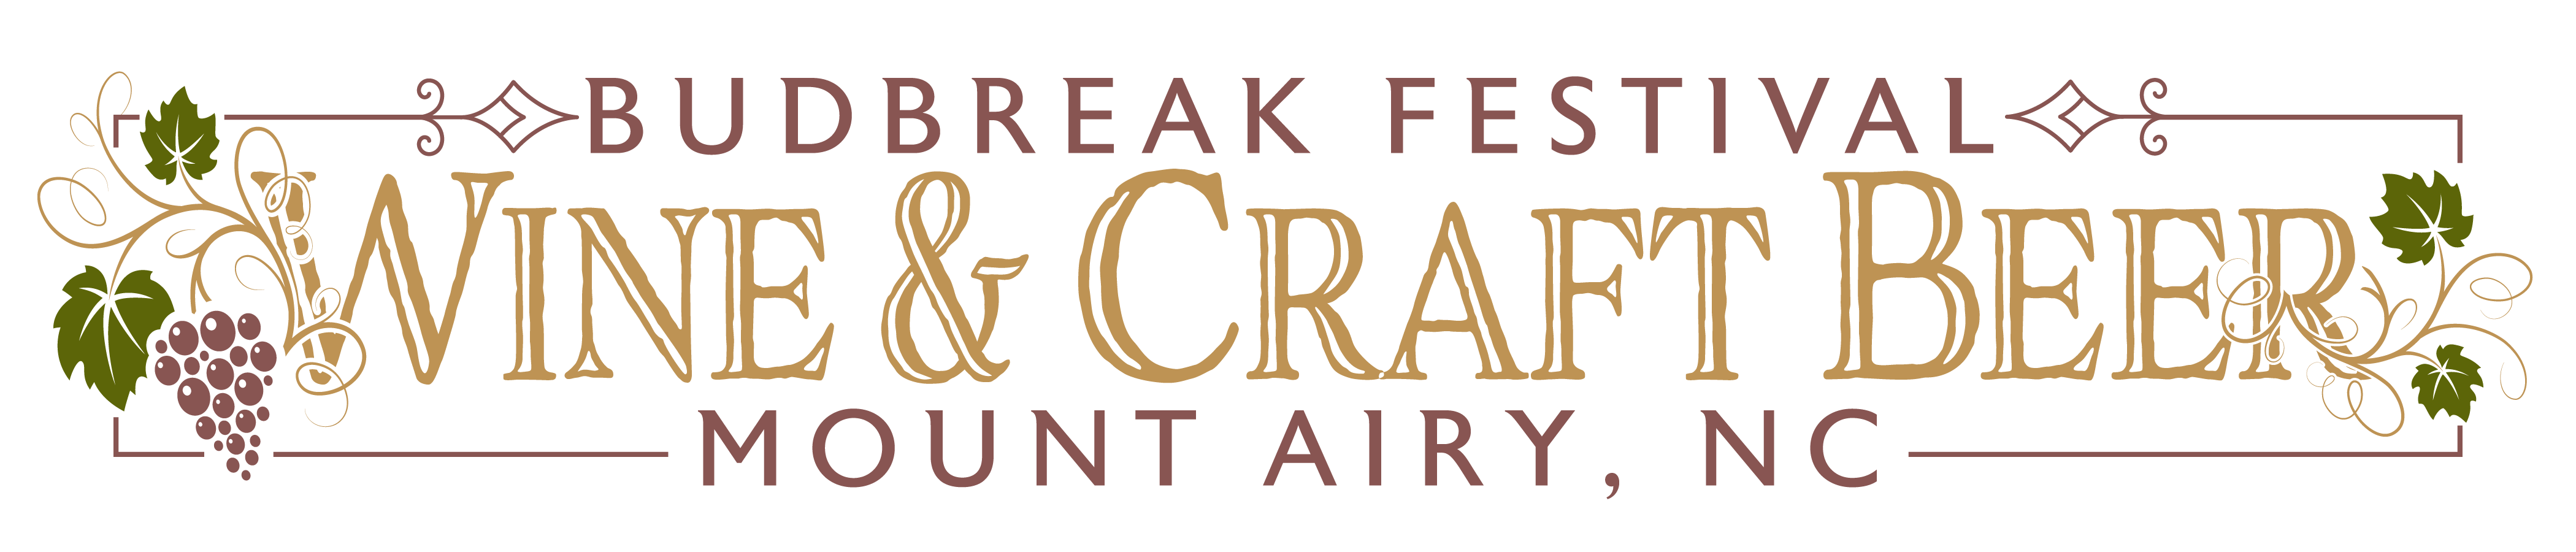 Wine & Craft Beer Budbreak Festival